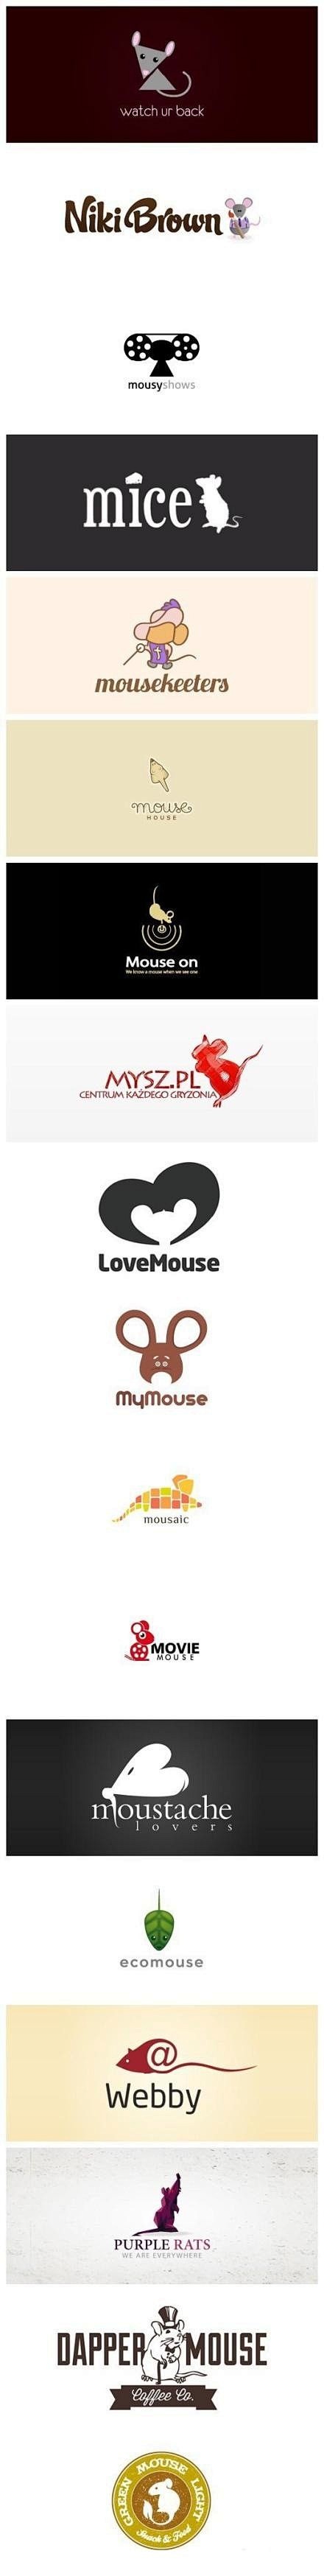 【一组以老鼠为主题的创意Logo设计】老...